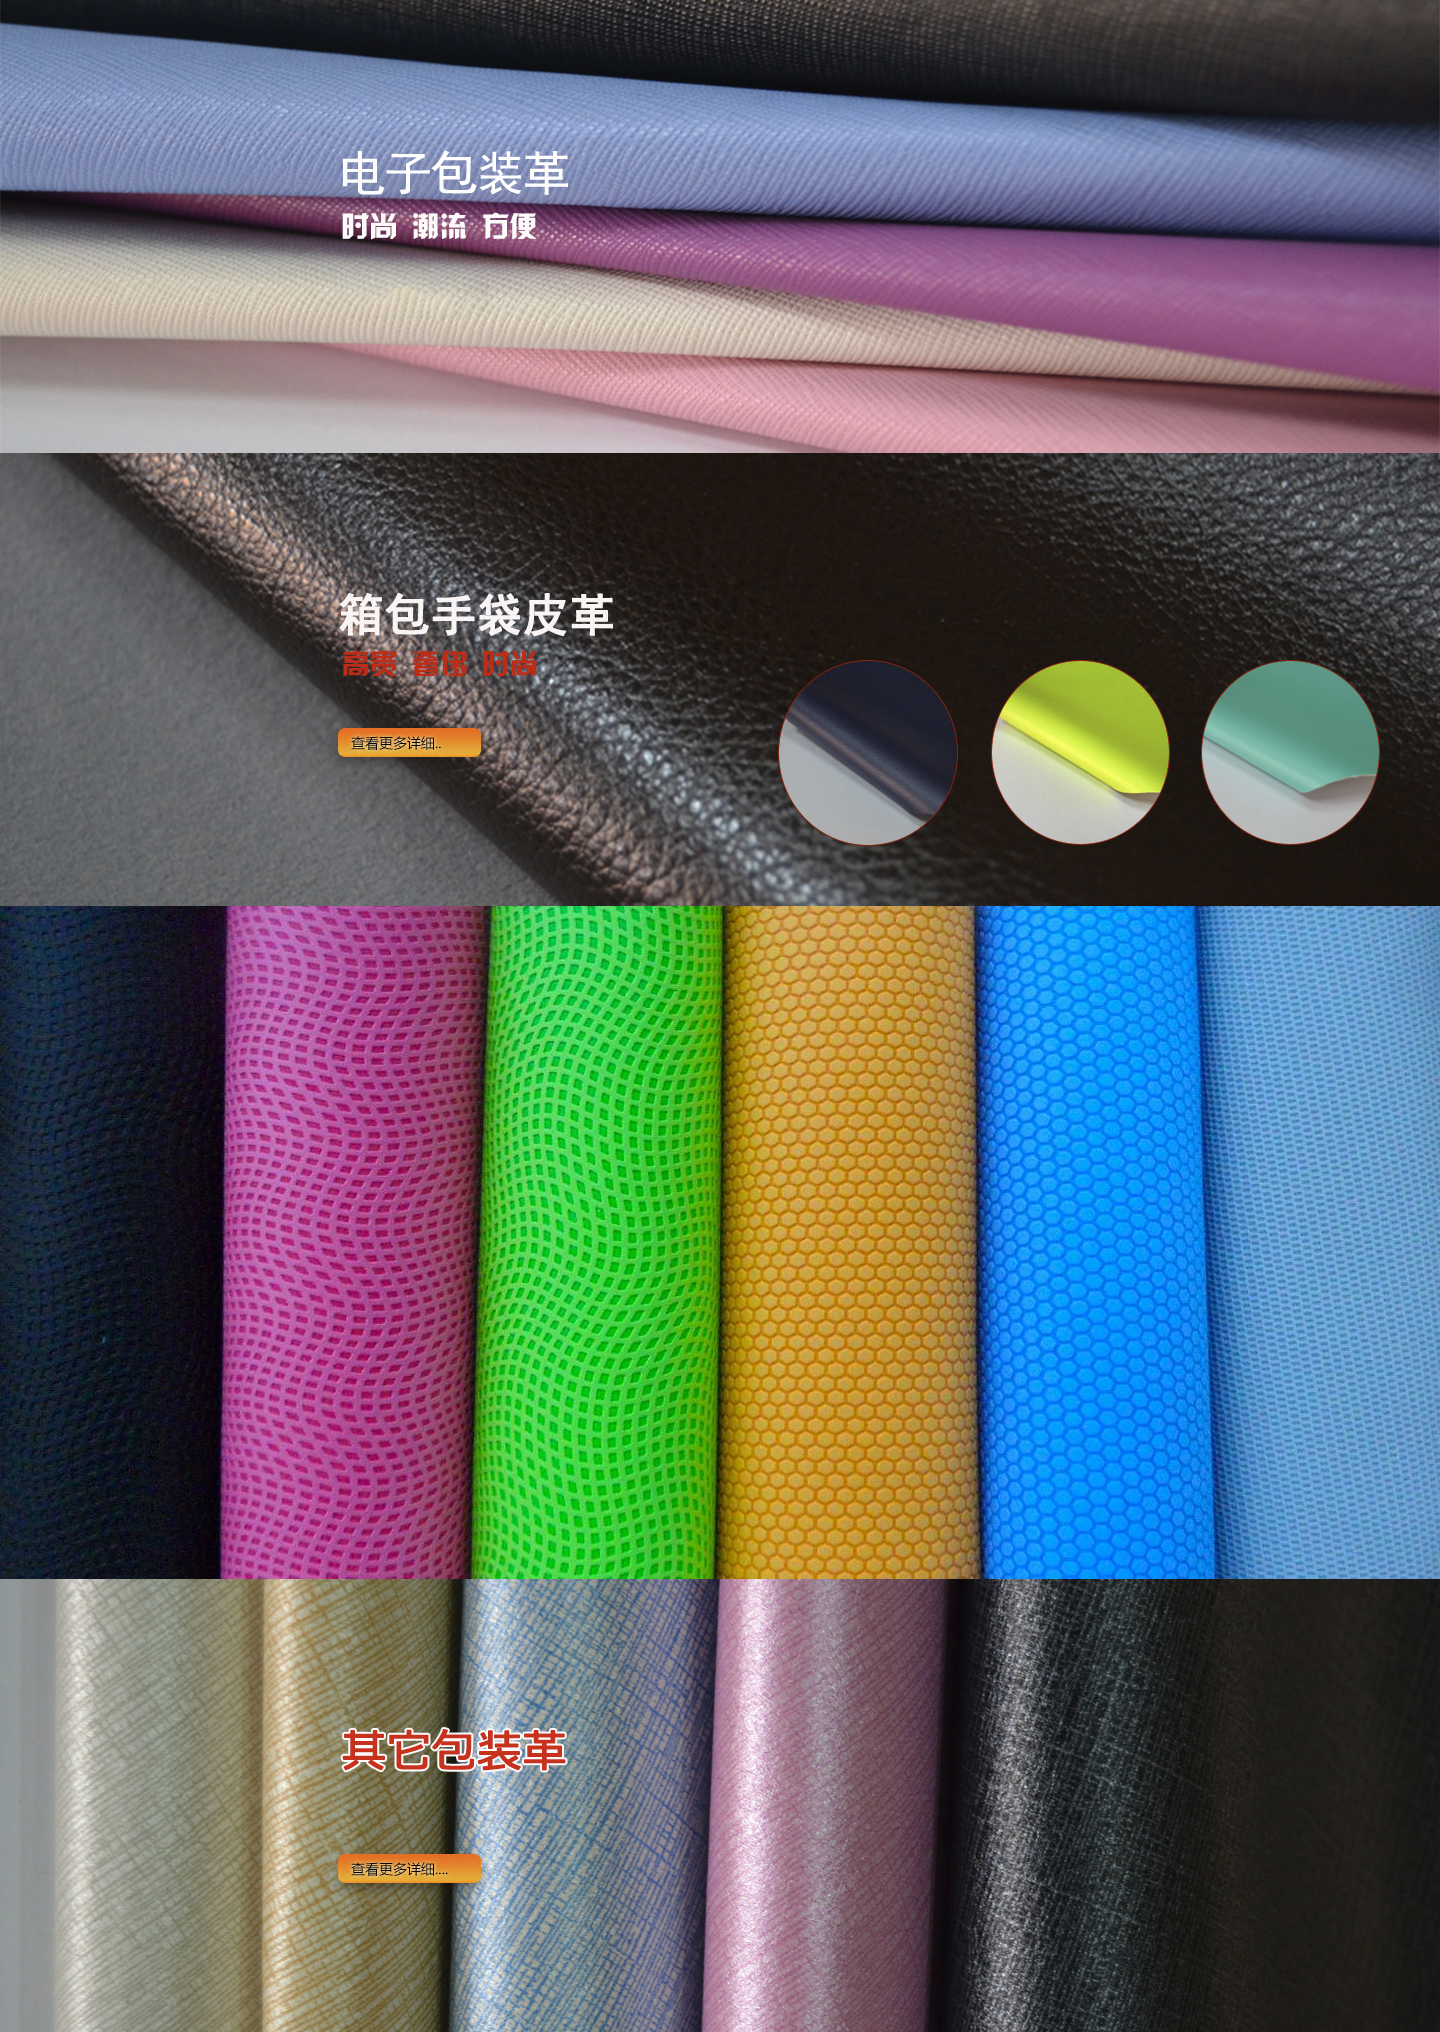 广东华盛元素皮革有限公司-上海国际包装展参展商